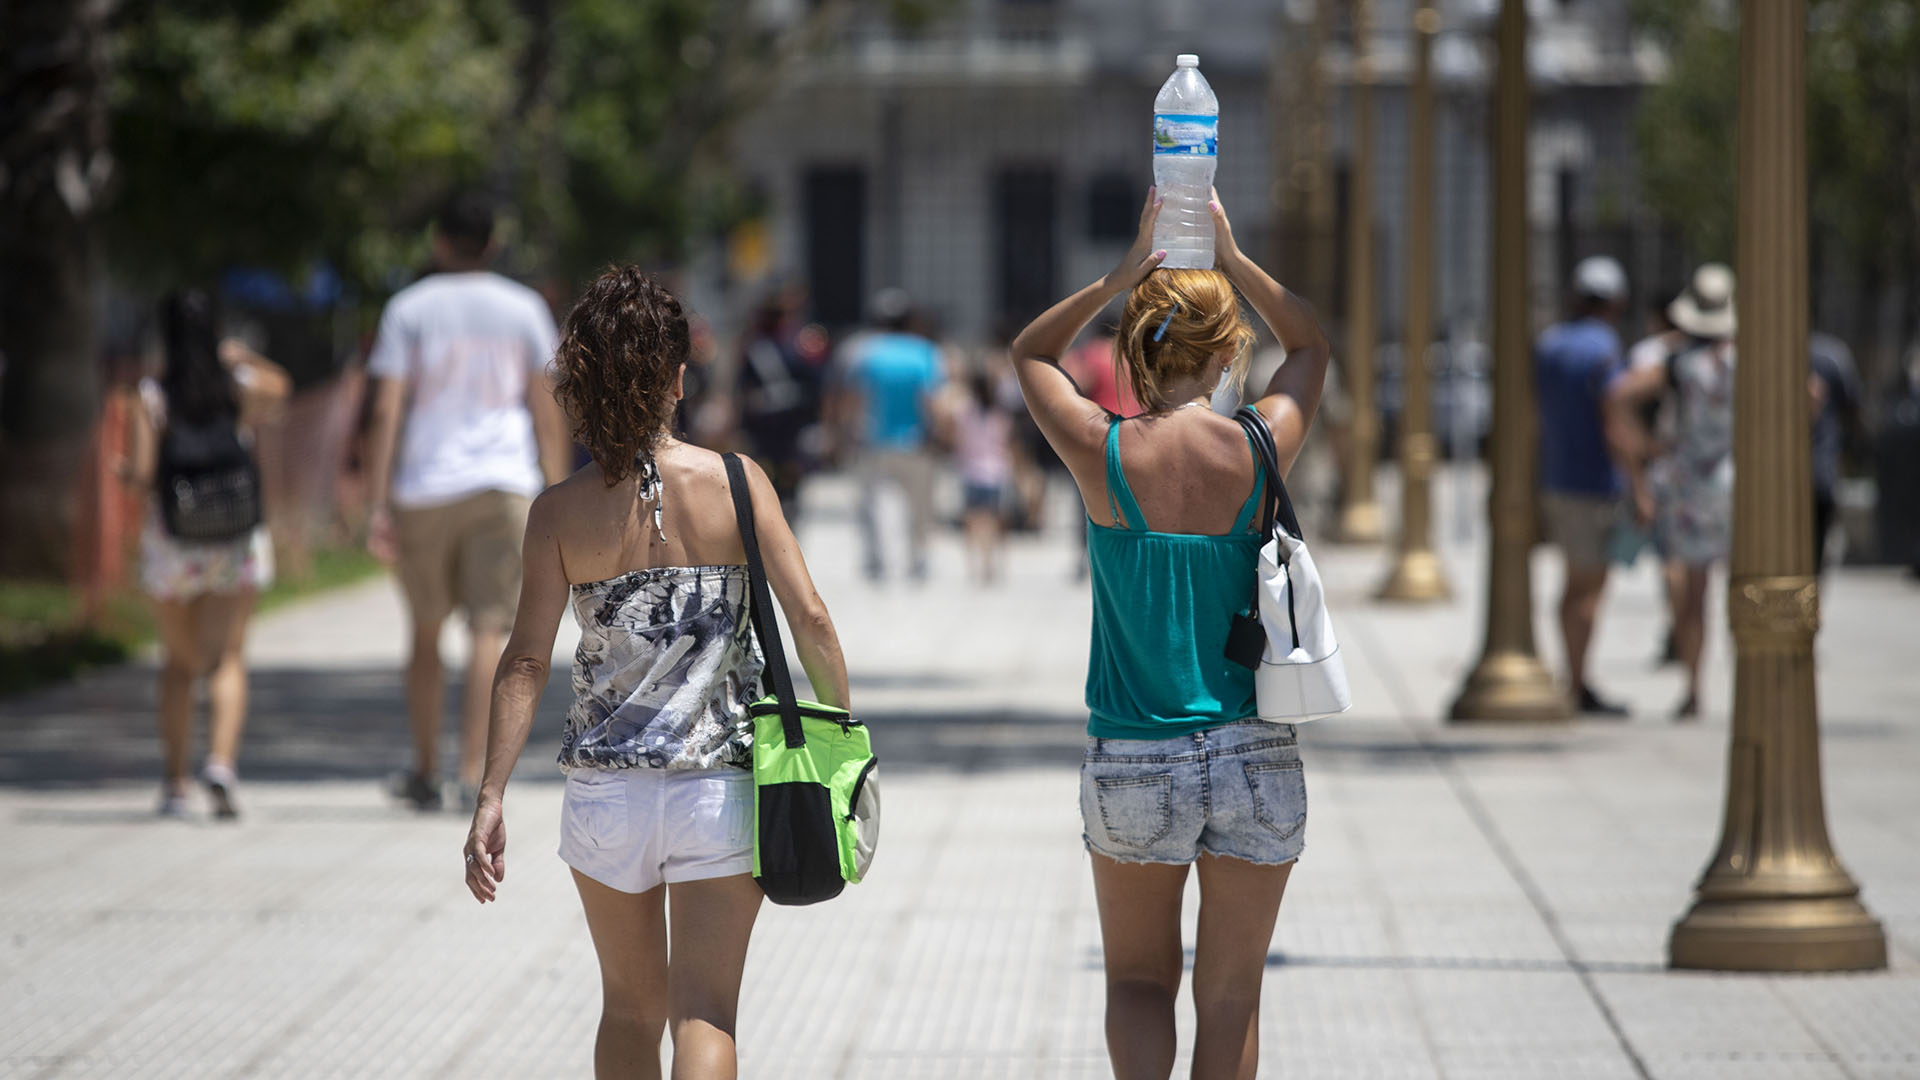 Sigue la alerta roja por calor extremo en CABA y provincia de Buenos Aires: cuándo llegan las lluvias